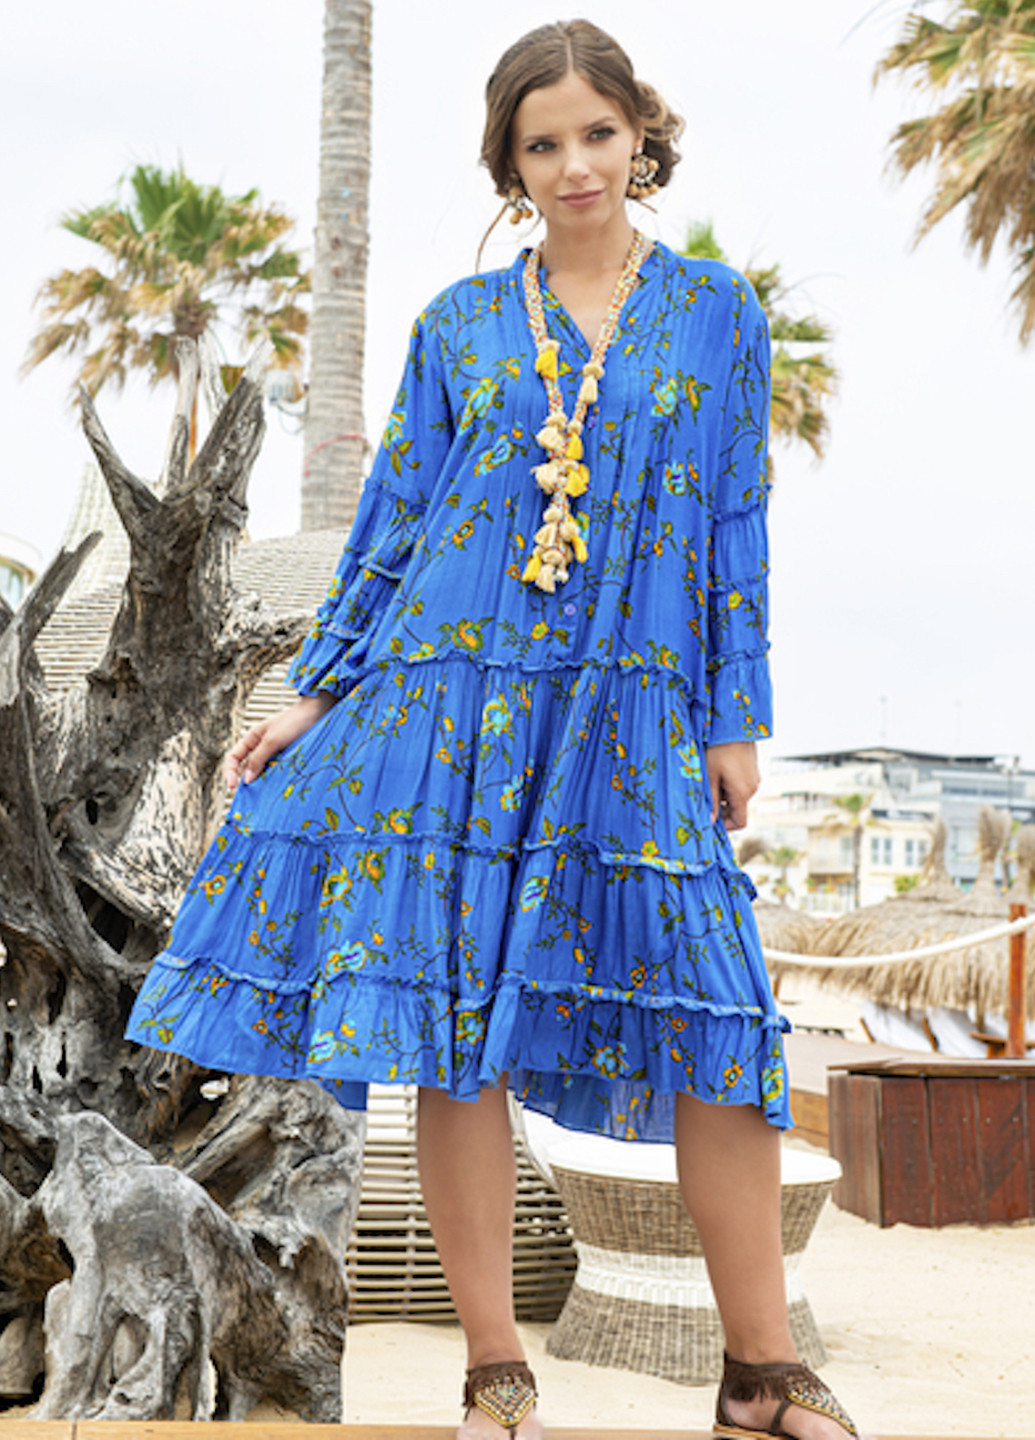 Синее пляжное платье клеш Indiano с цветочным принтом